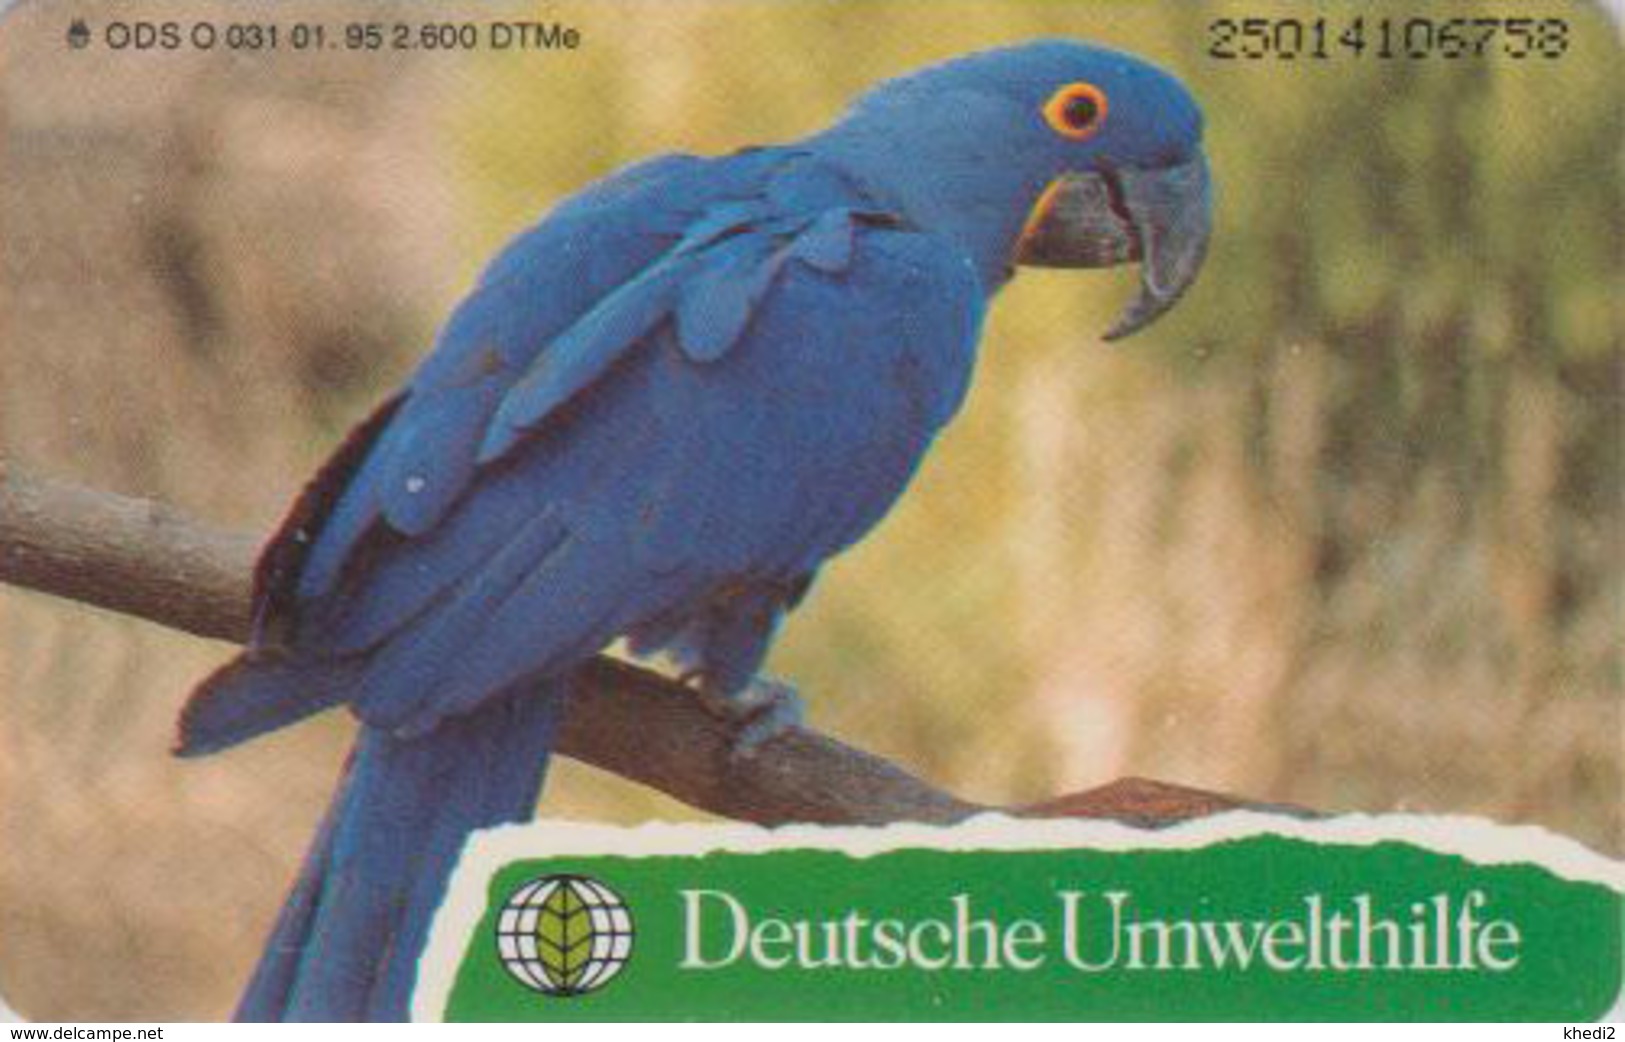 Télécarte à Puce Allemagne - DEUTSCHE UMWELTHILFE - ANIMAL - OISEAU ARA PERROQUET PARROT BIRD - Chip Phonecard - Pappagalli